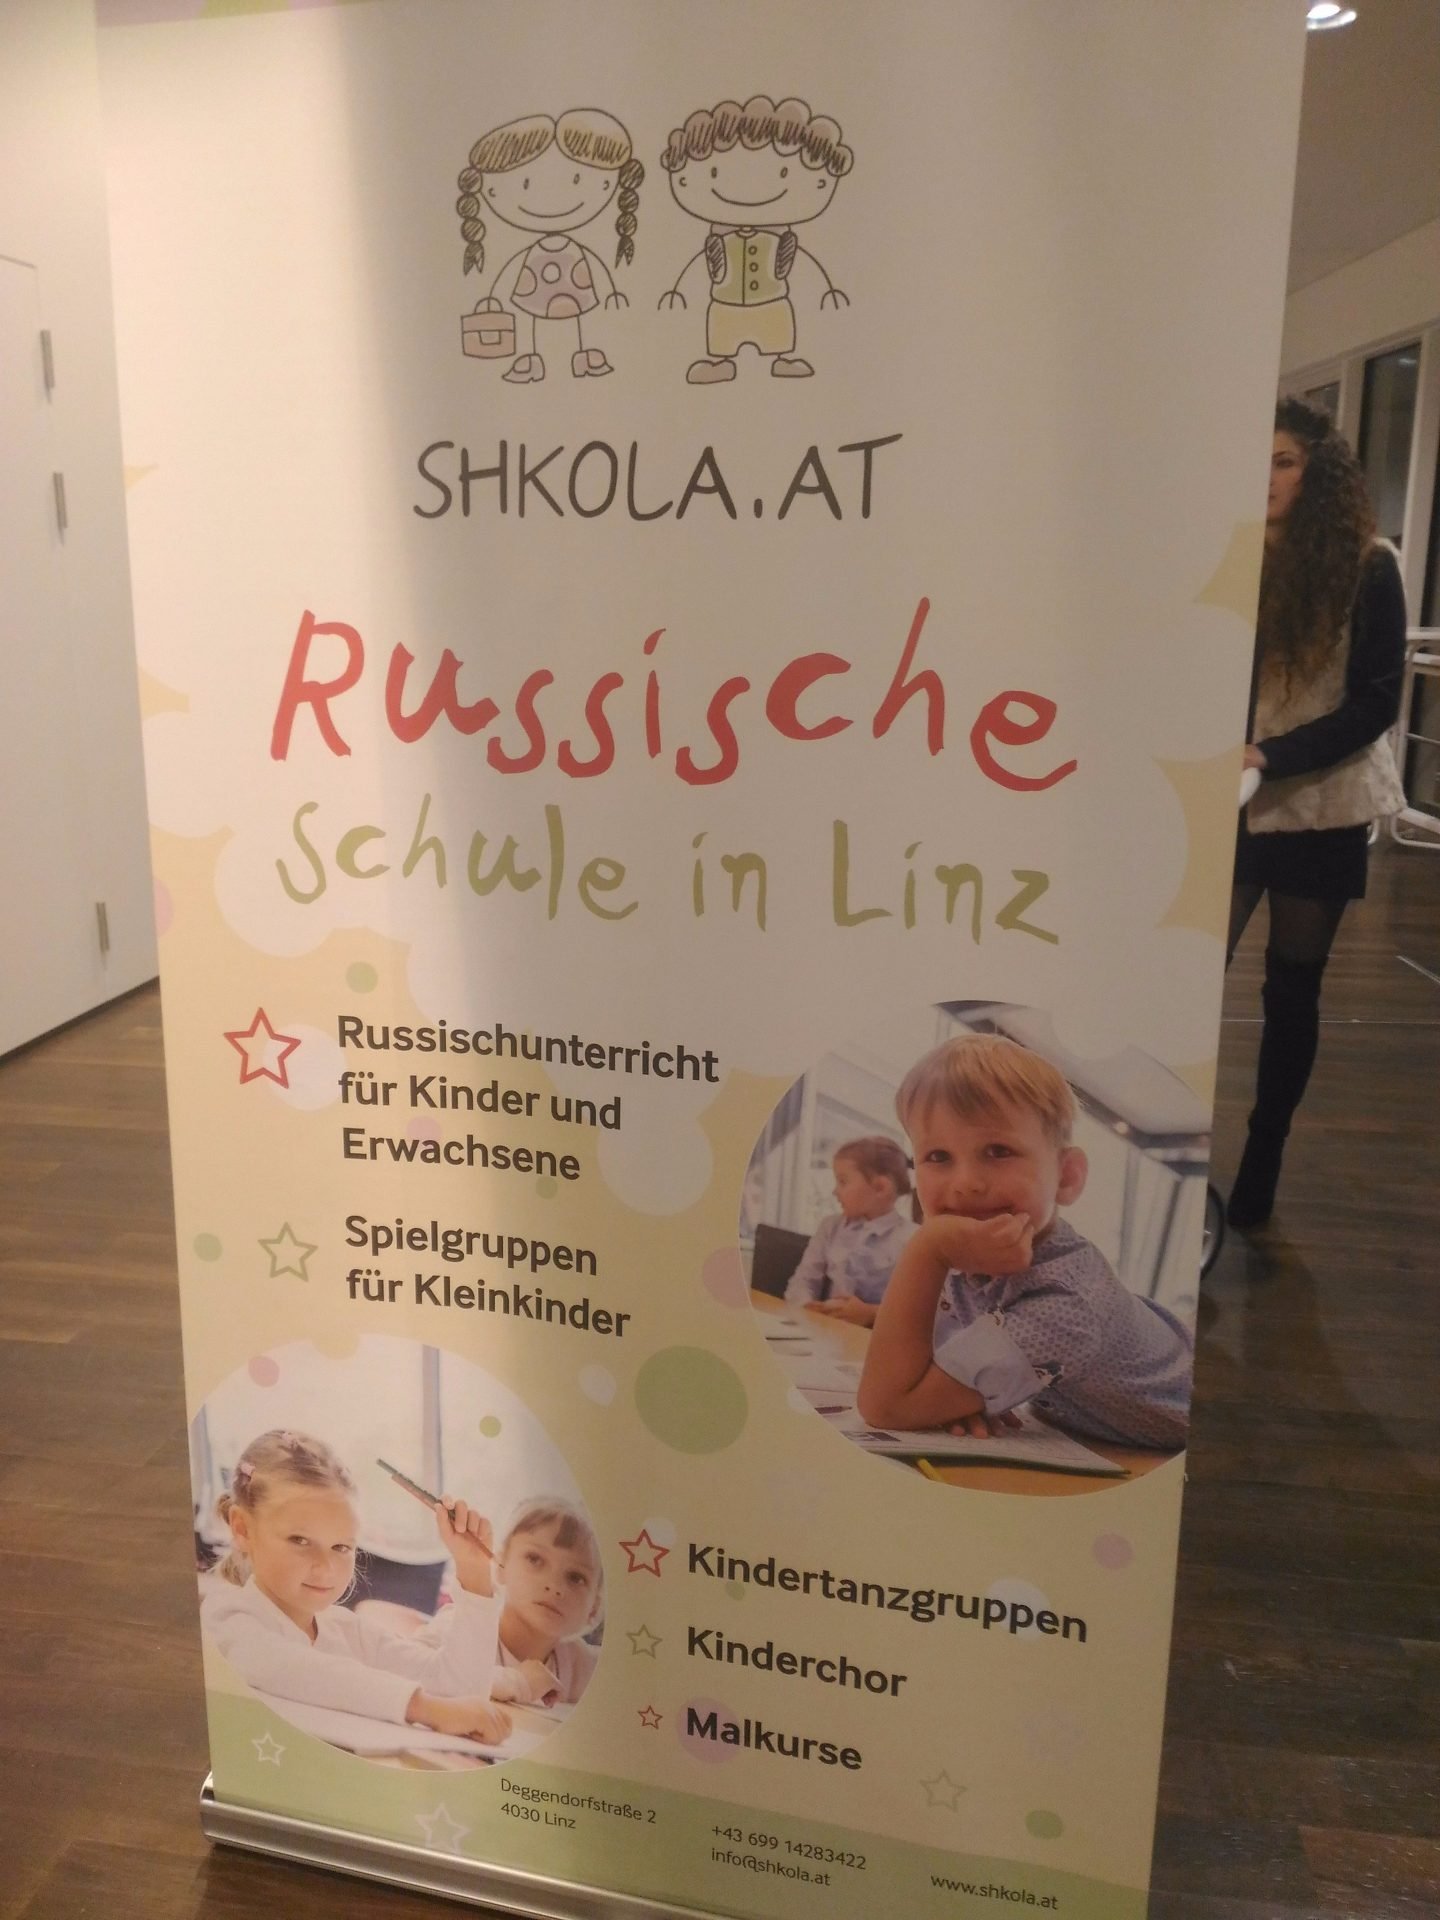 Реклама русской школы в городе Пихленг